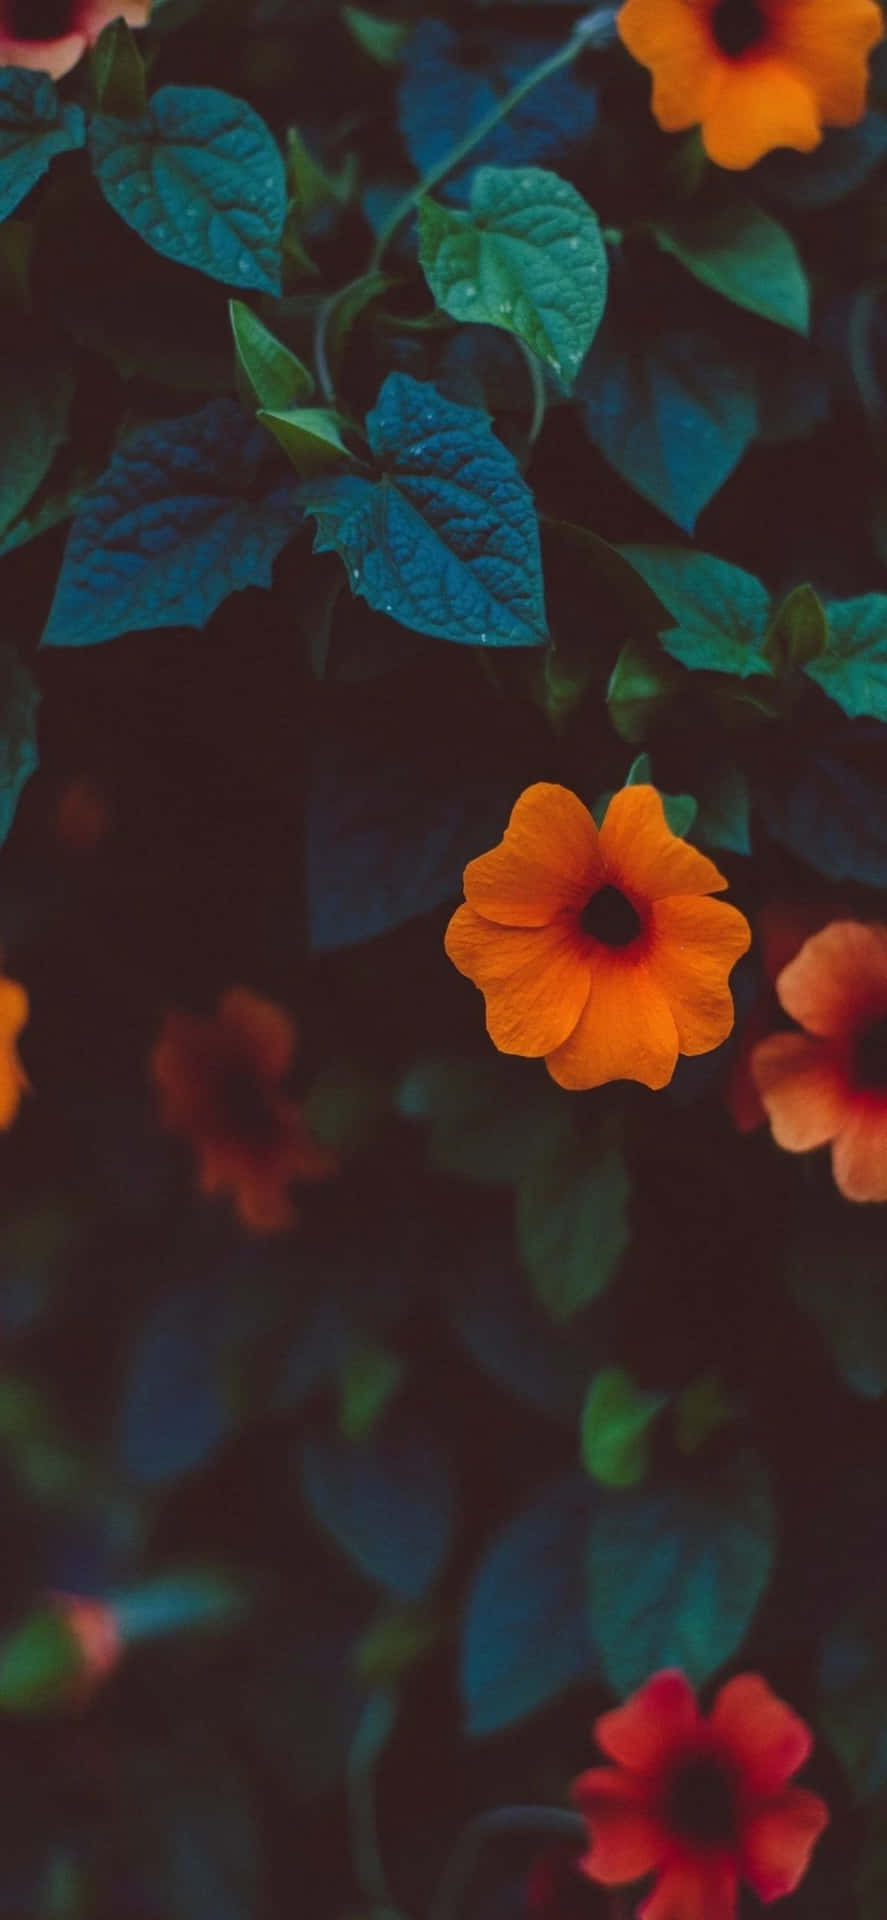 Orange Flowers On A Dark Background